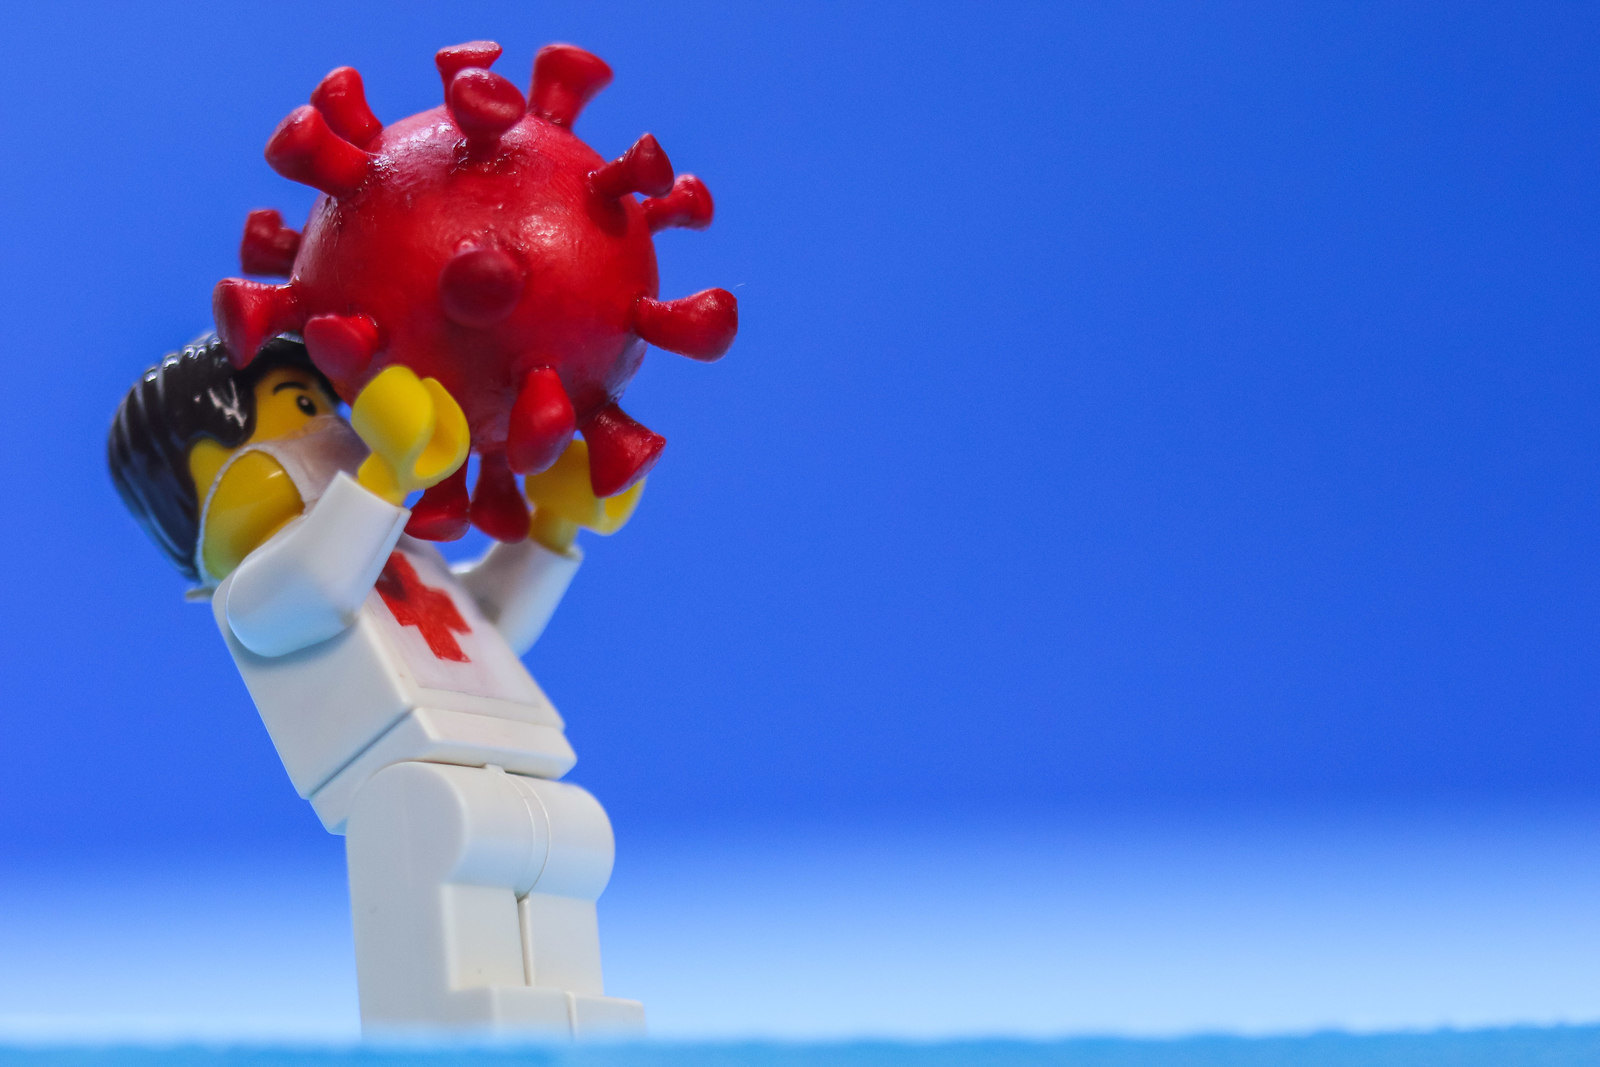 SOROCABA, SP - 11.05.2020: ILUSTRAÇÃO COVID 19 COM LEGO - Foto ilustrativa da COVID-19 (novo coronavírus) com médico/enfermeiro de máscara cirúrgica segurando vírus , feito com brinquedo Lego. (Foto: Cadu Rolim /Fotoarena/Folhapress) ORG XMIT: 1912709